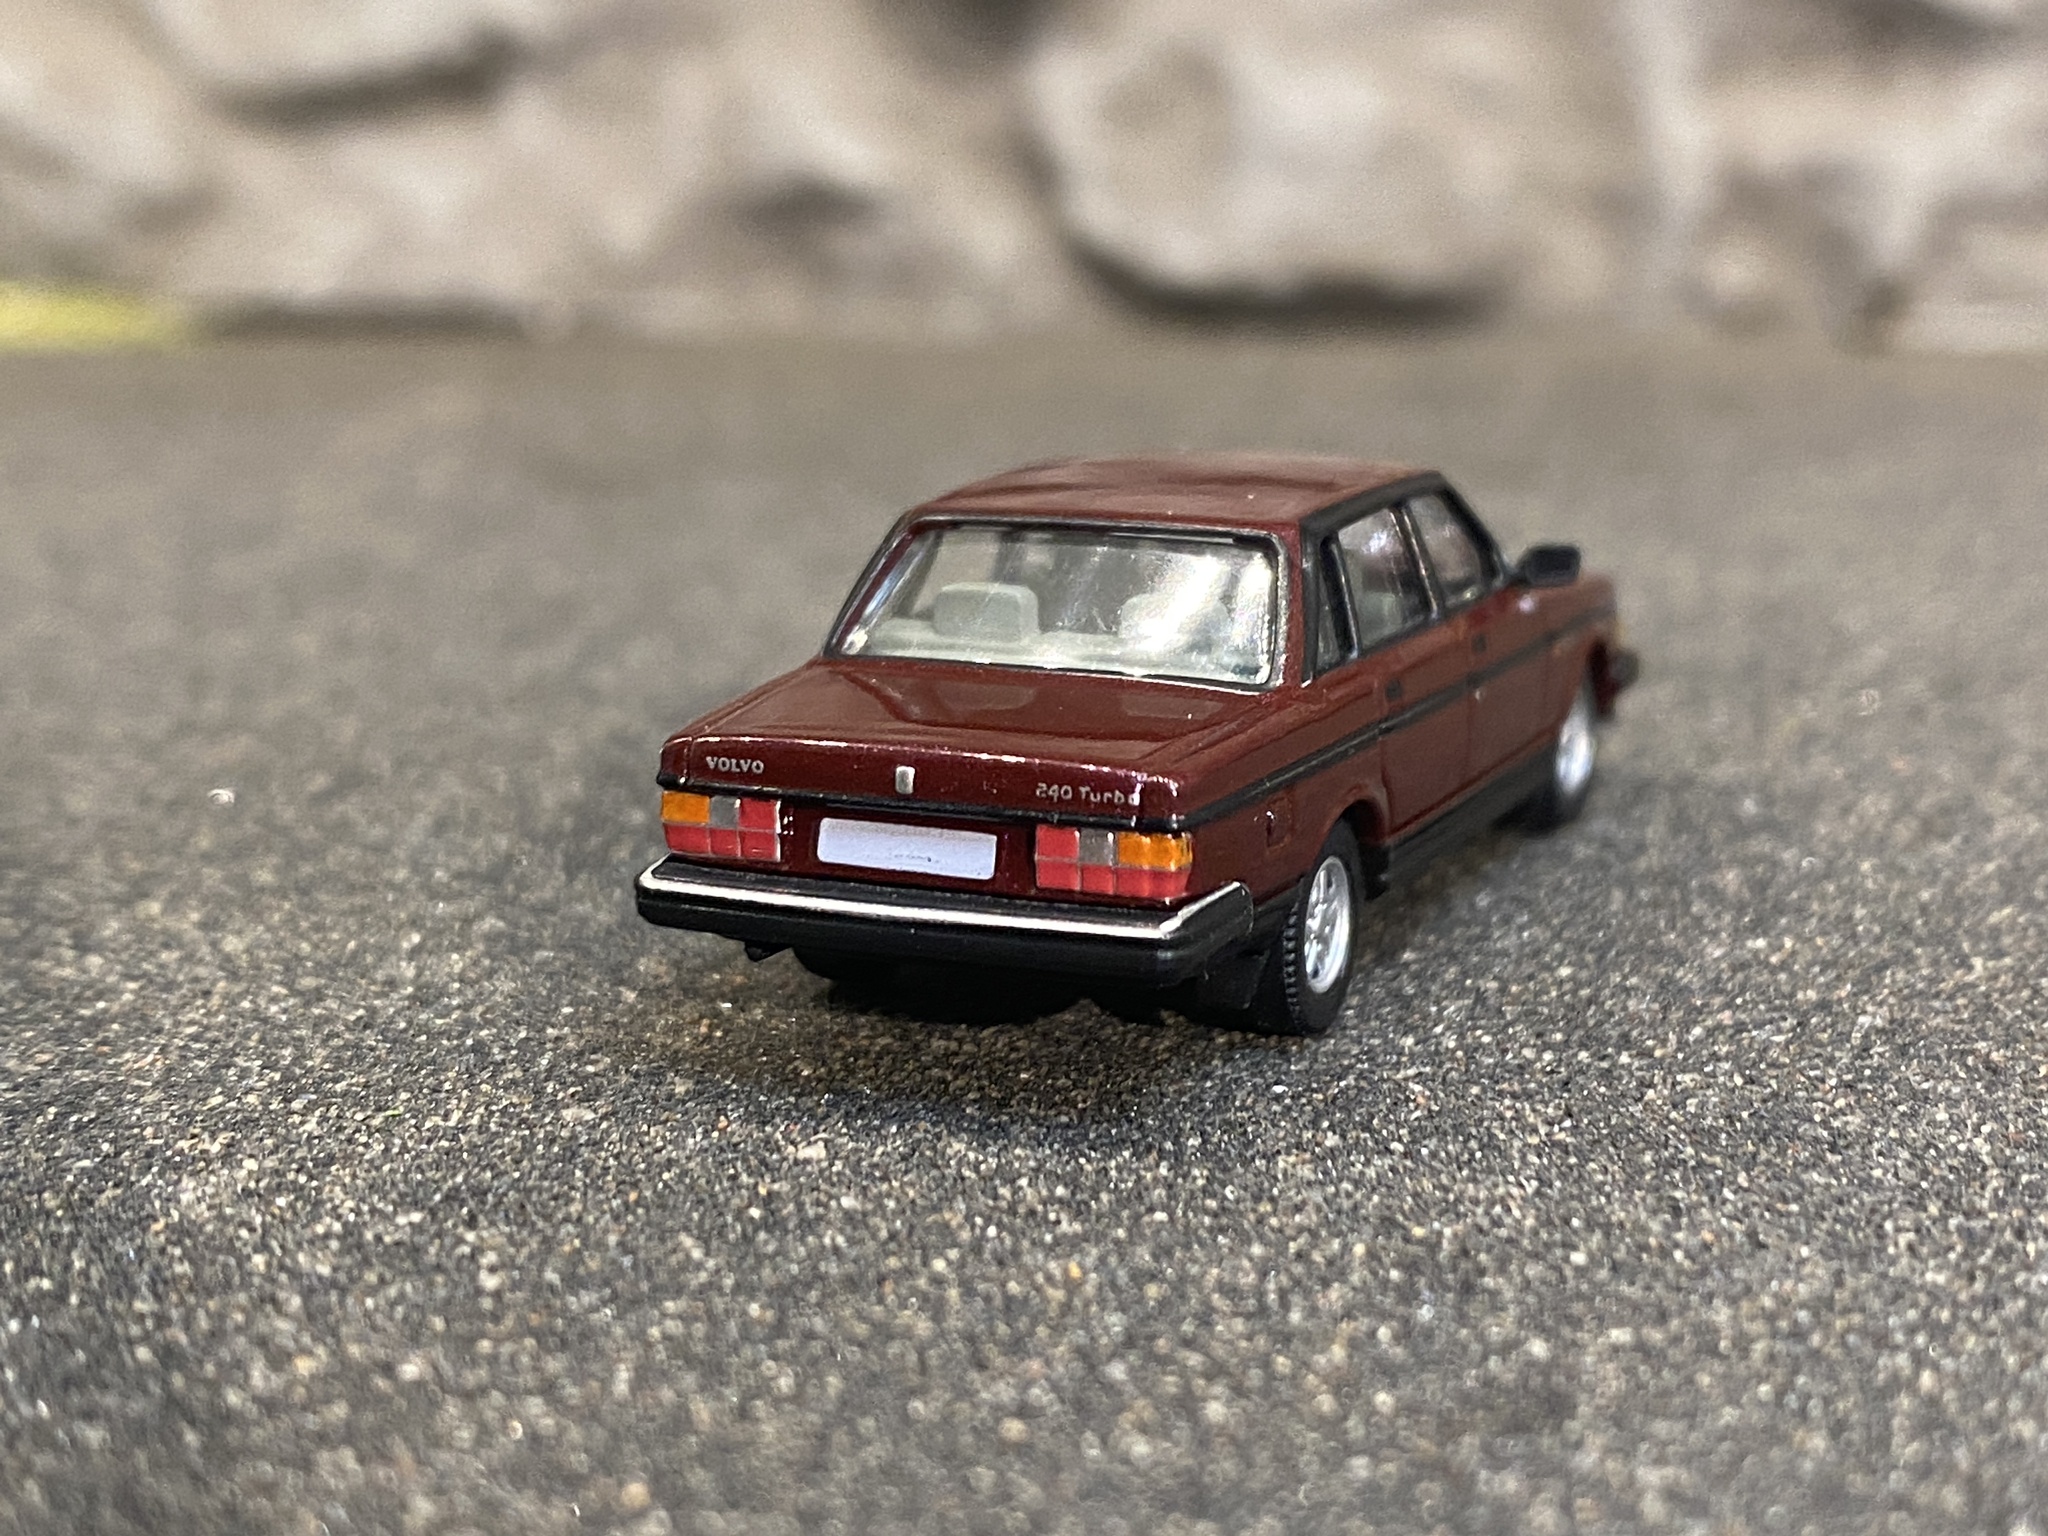 Skala 1/87 - Volvo 240 GL (244), Mörkröd  från PCX87